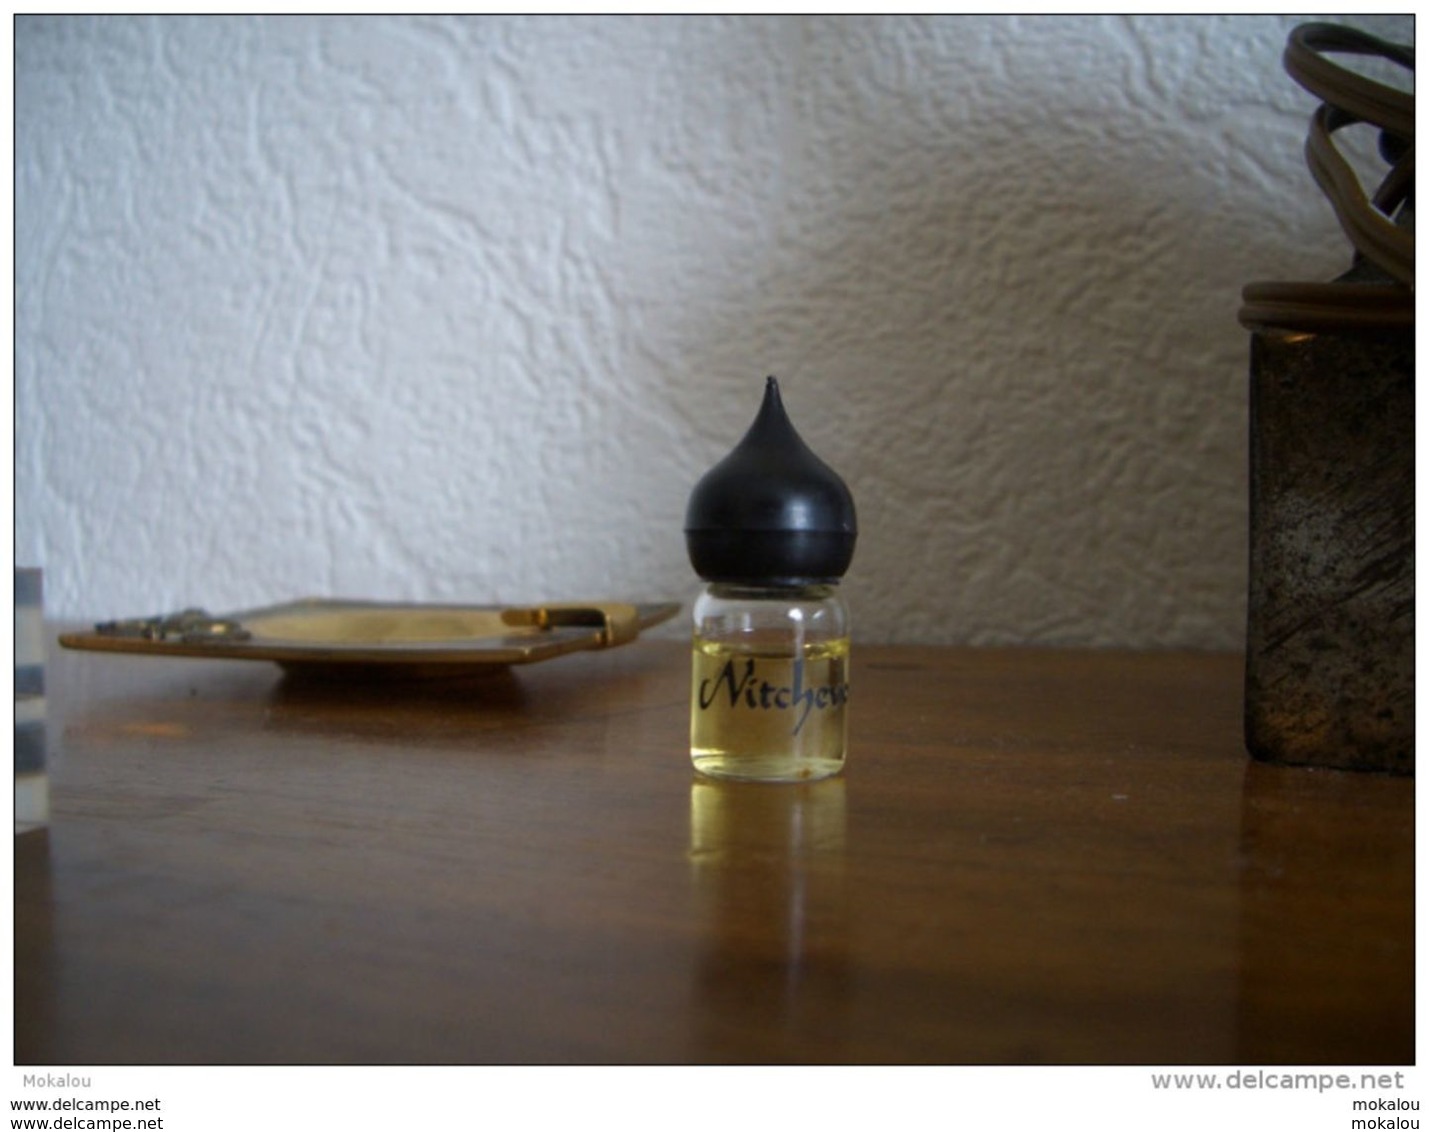 Miniature Juvena Nitchevo 2ml - Miniature Bottles (without Box)